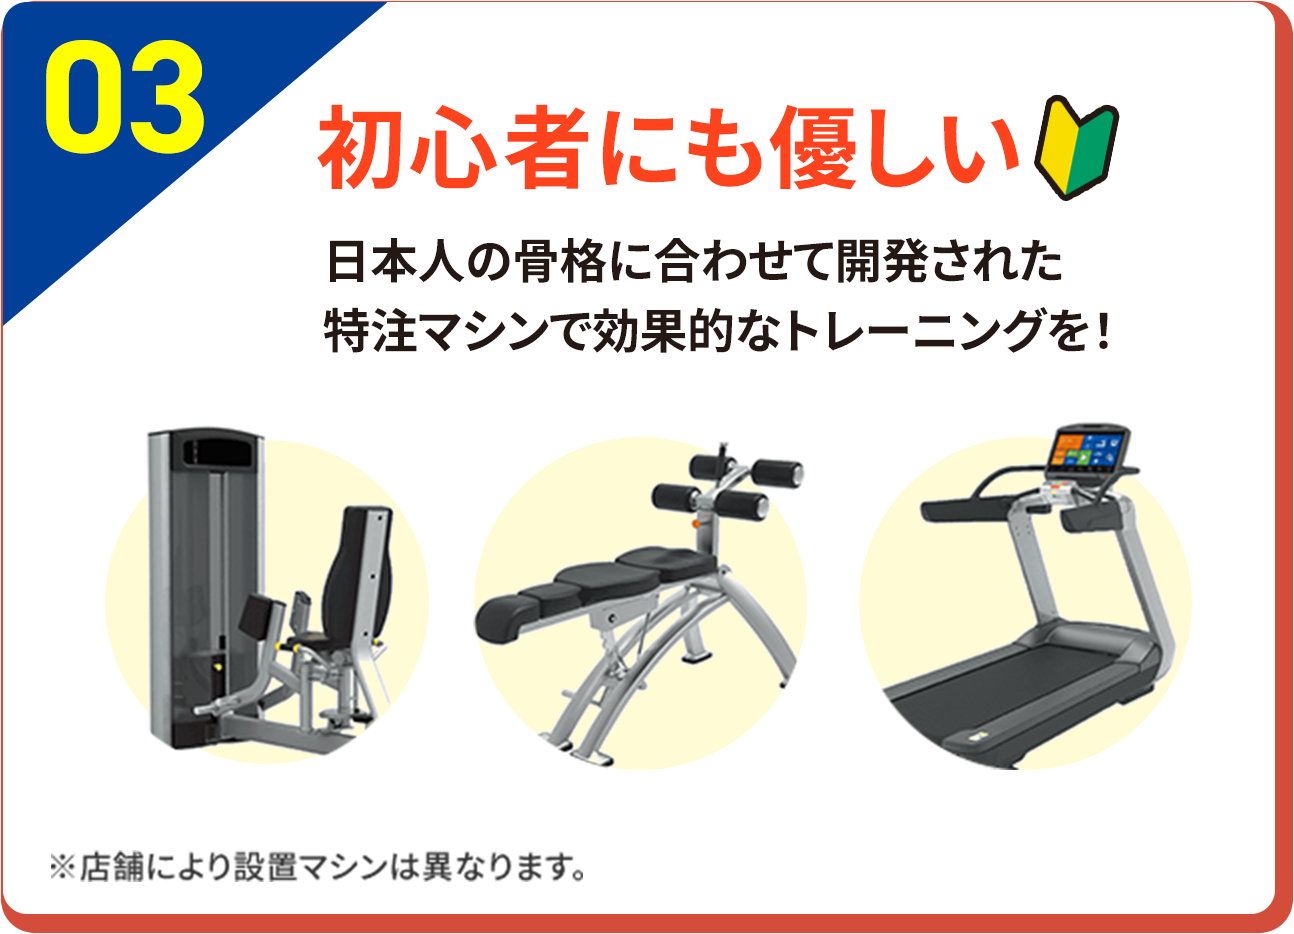 03 初心者にも優しい 日本人の骨格に合わせて開発された特注マシンで効果的なトレーニングを！